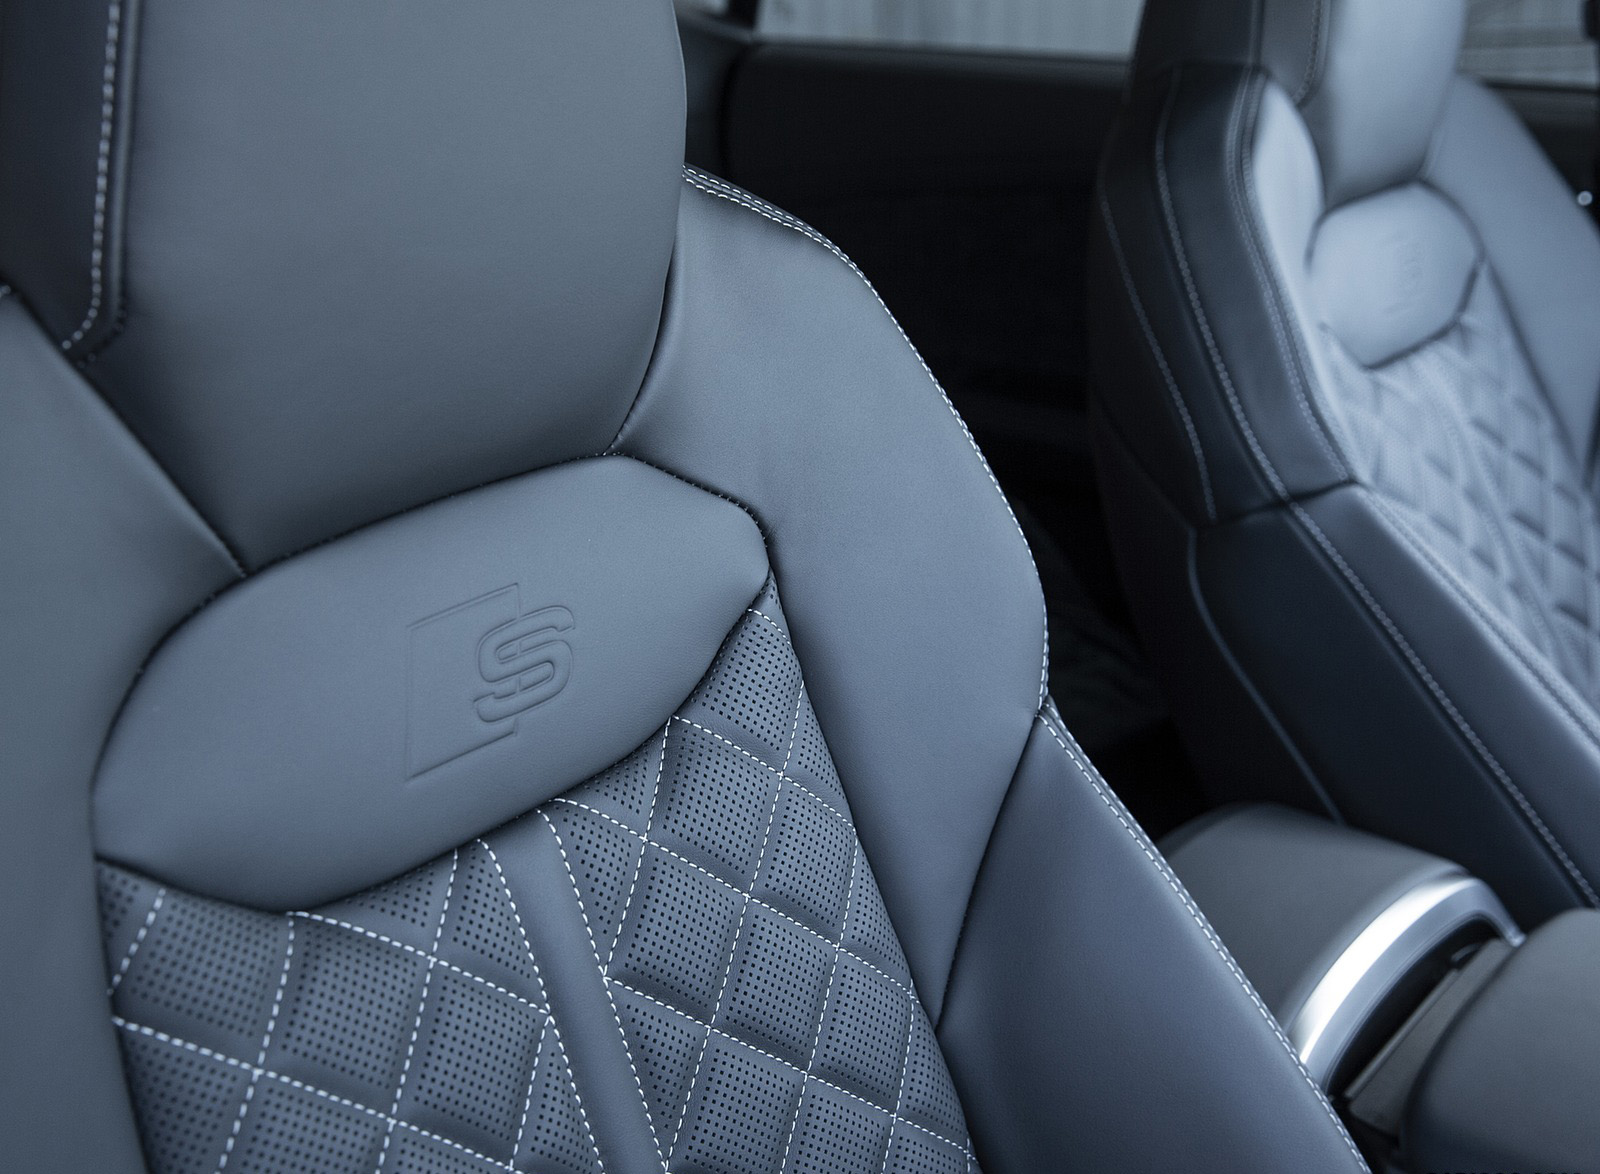 2020 Audi SQ8 TDI quattro (UK-Spec) Interior Seats Wallpapers #134 of 140